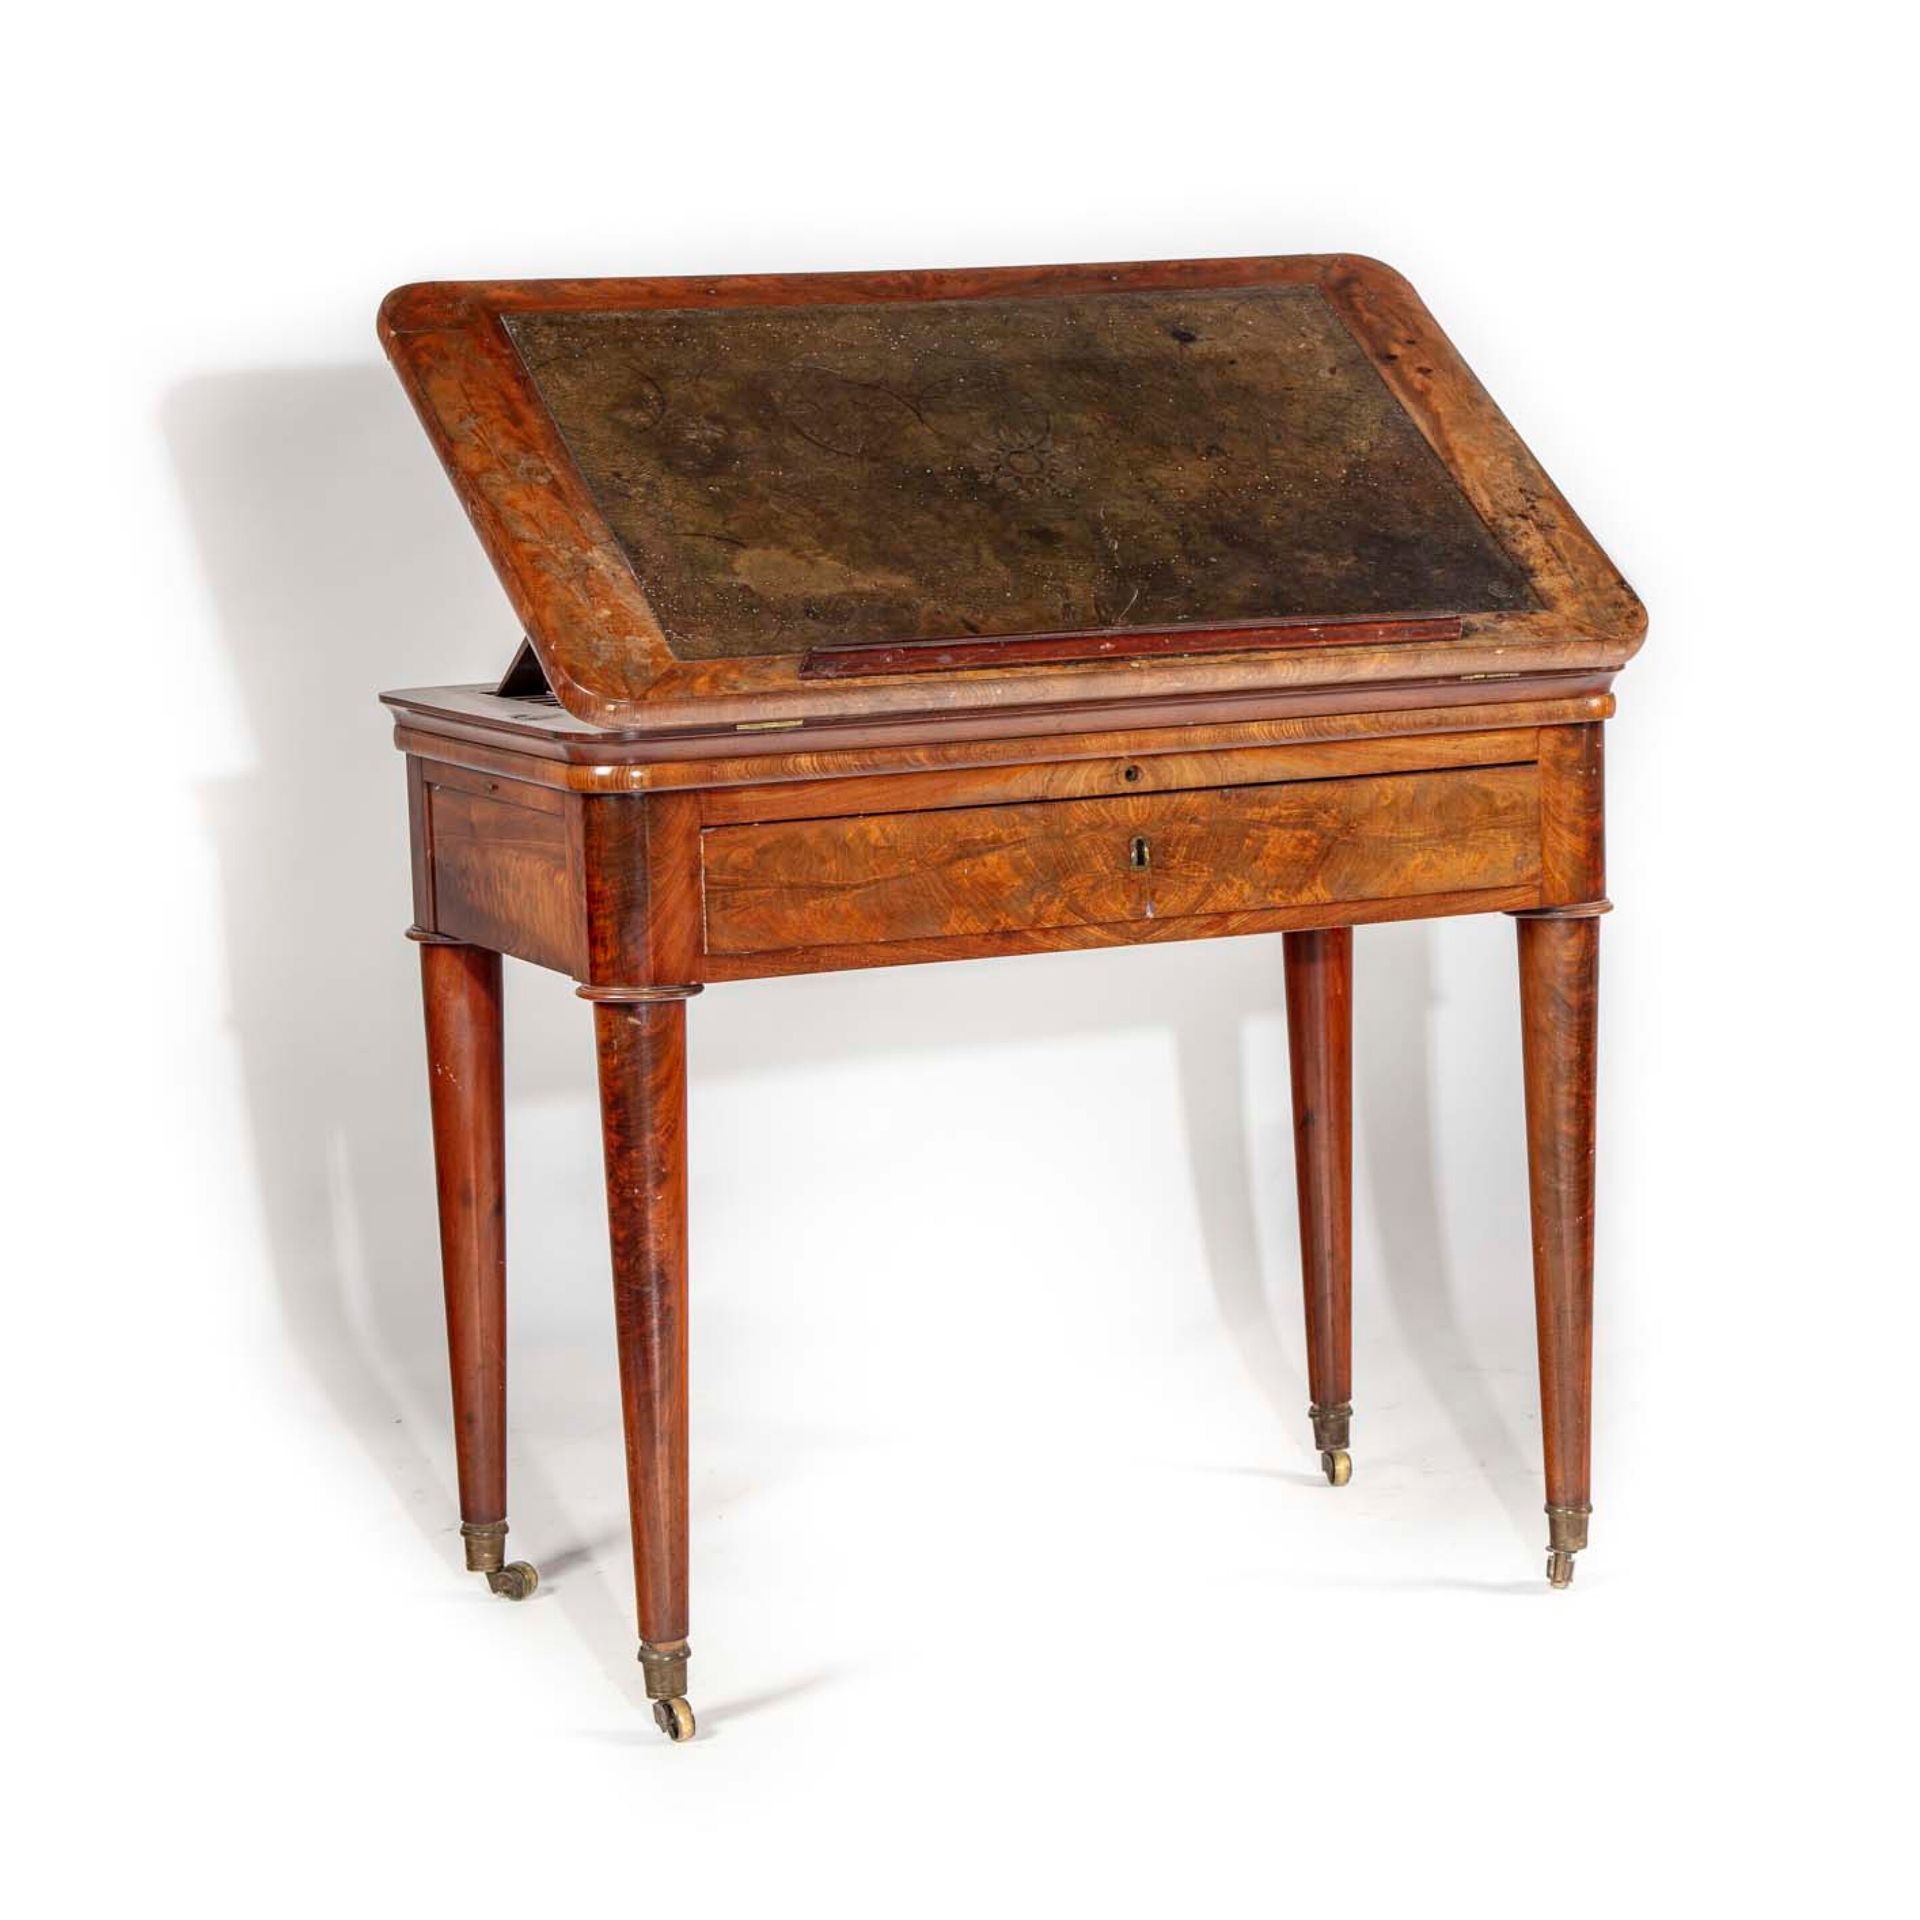 Null 木桌 "à la Tronchin"，顶部覆盖着皮革，抬起来形成一个书桌的开口，腰部有一个抽屉，圆形的立柱和锥形的腿，最后有脚轮。

19世纪上半叶
&hellip;